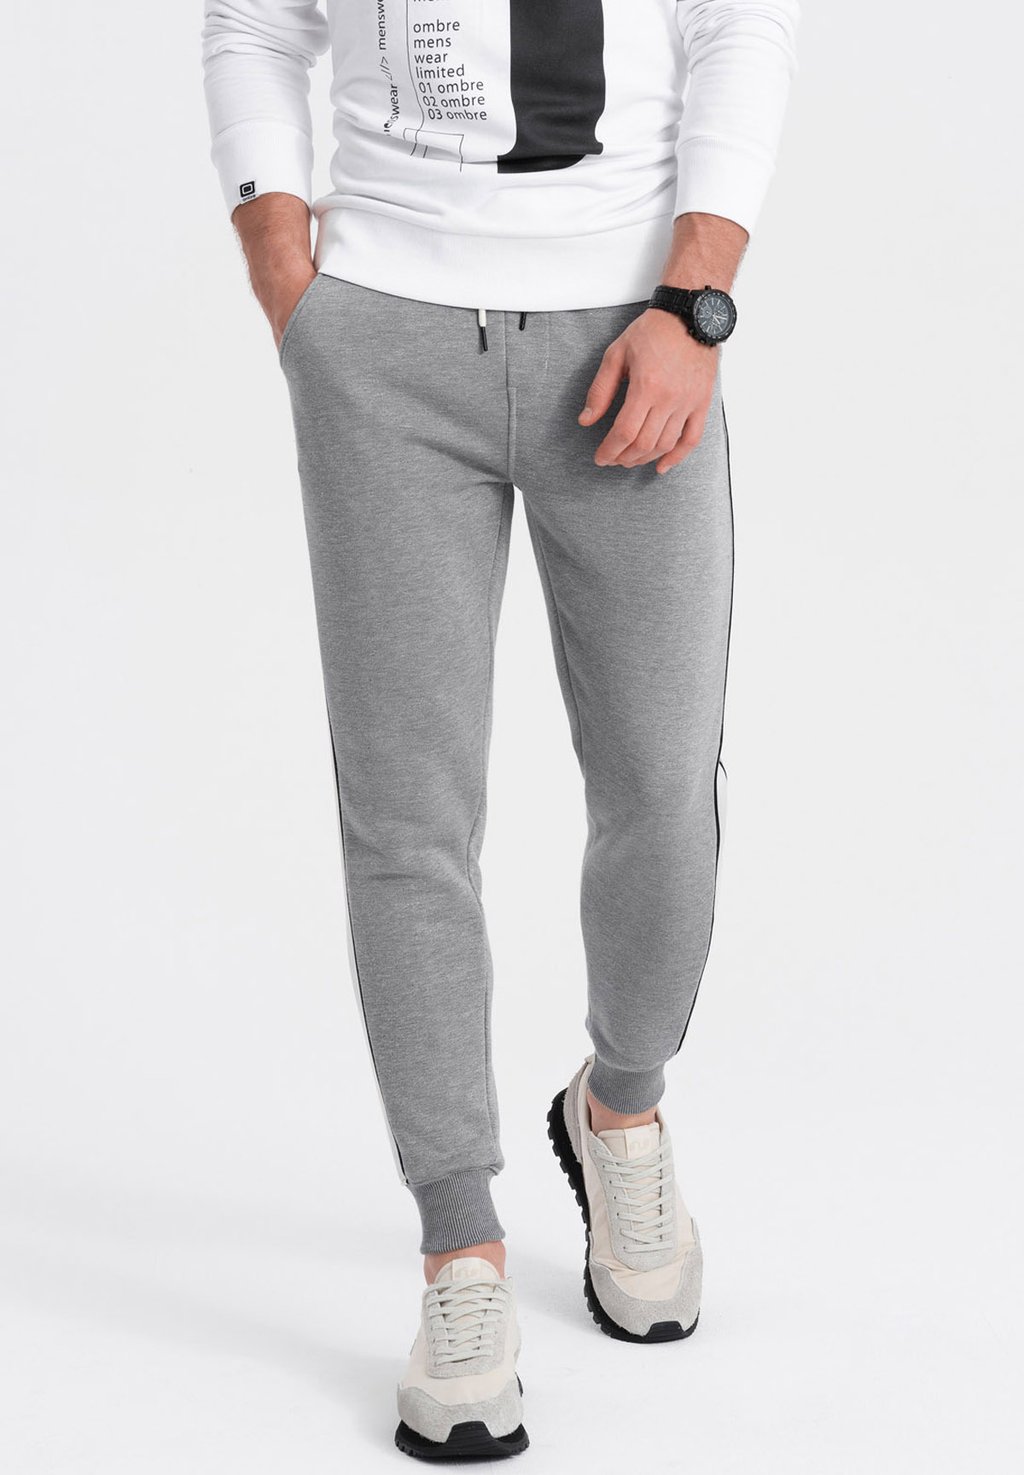 Спортивные брюки Ombre, серый меланж спортивные брюки siksilk серый меланж